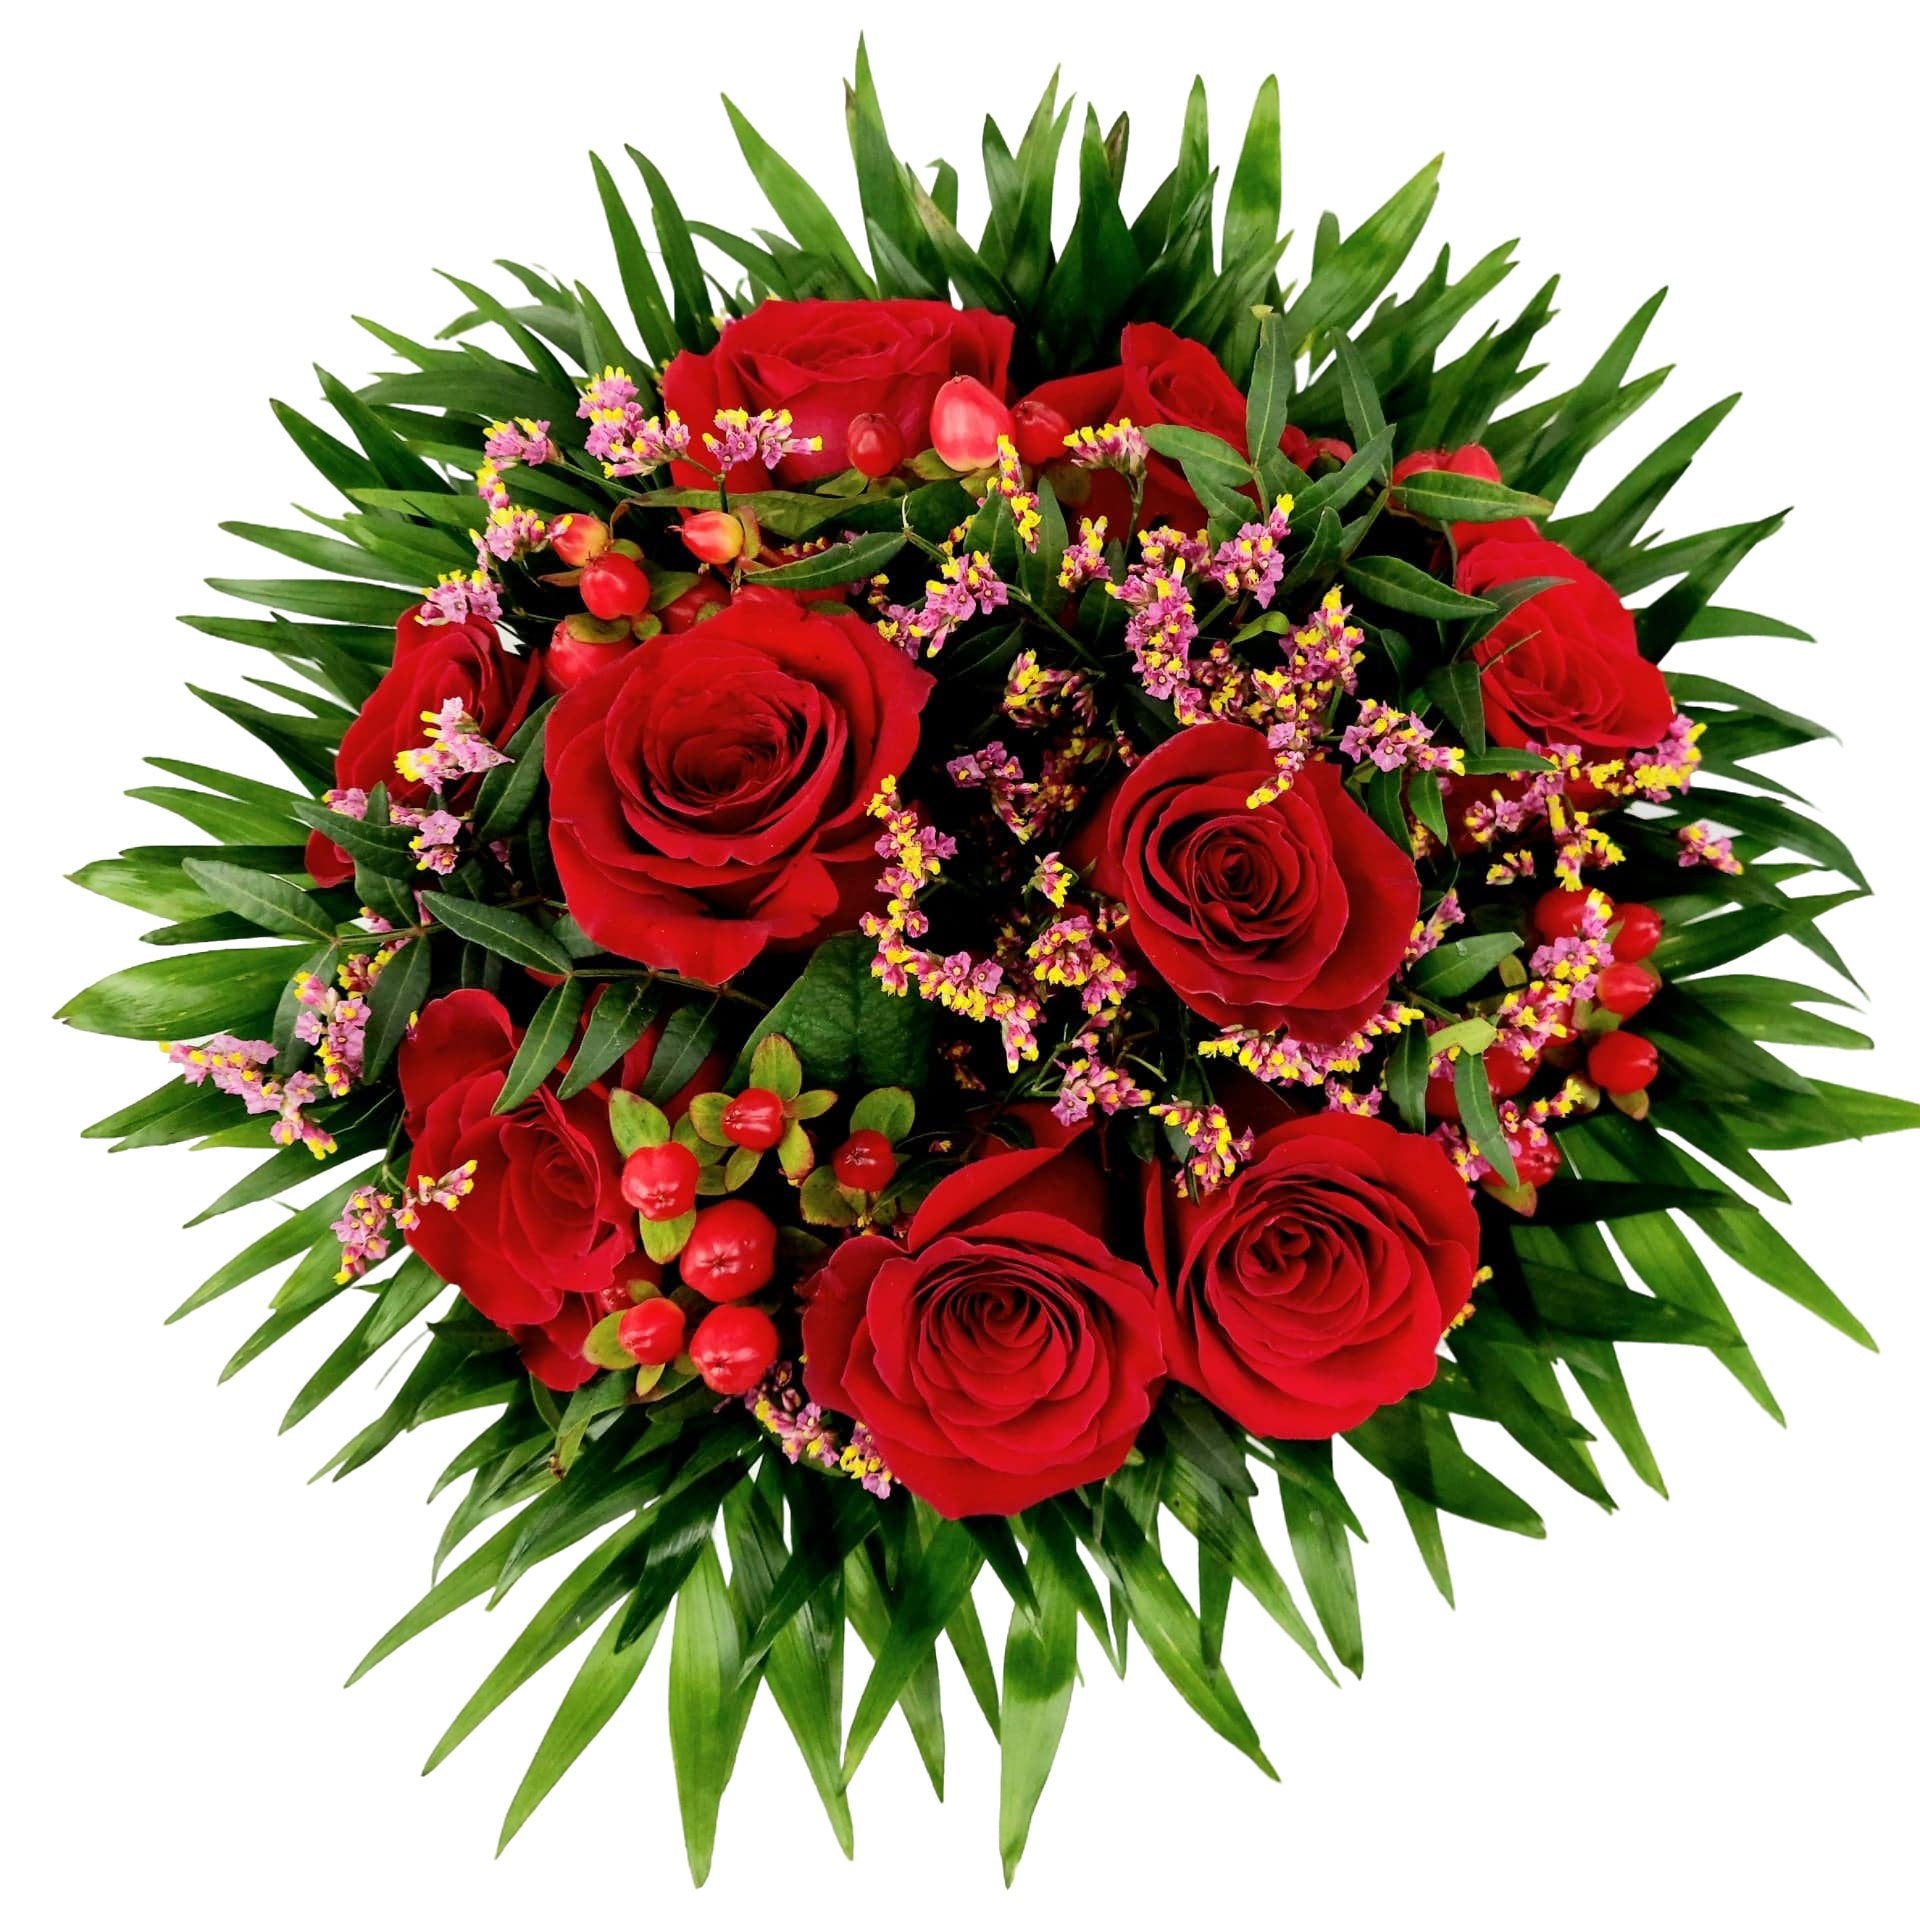 Donáška kvetov - Marilyn Monroe kytica červených ruží - slovenske-kvety.sk